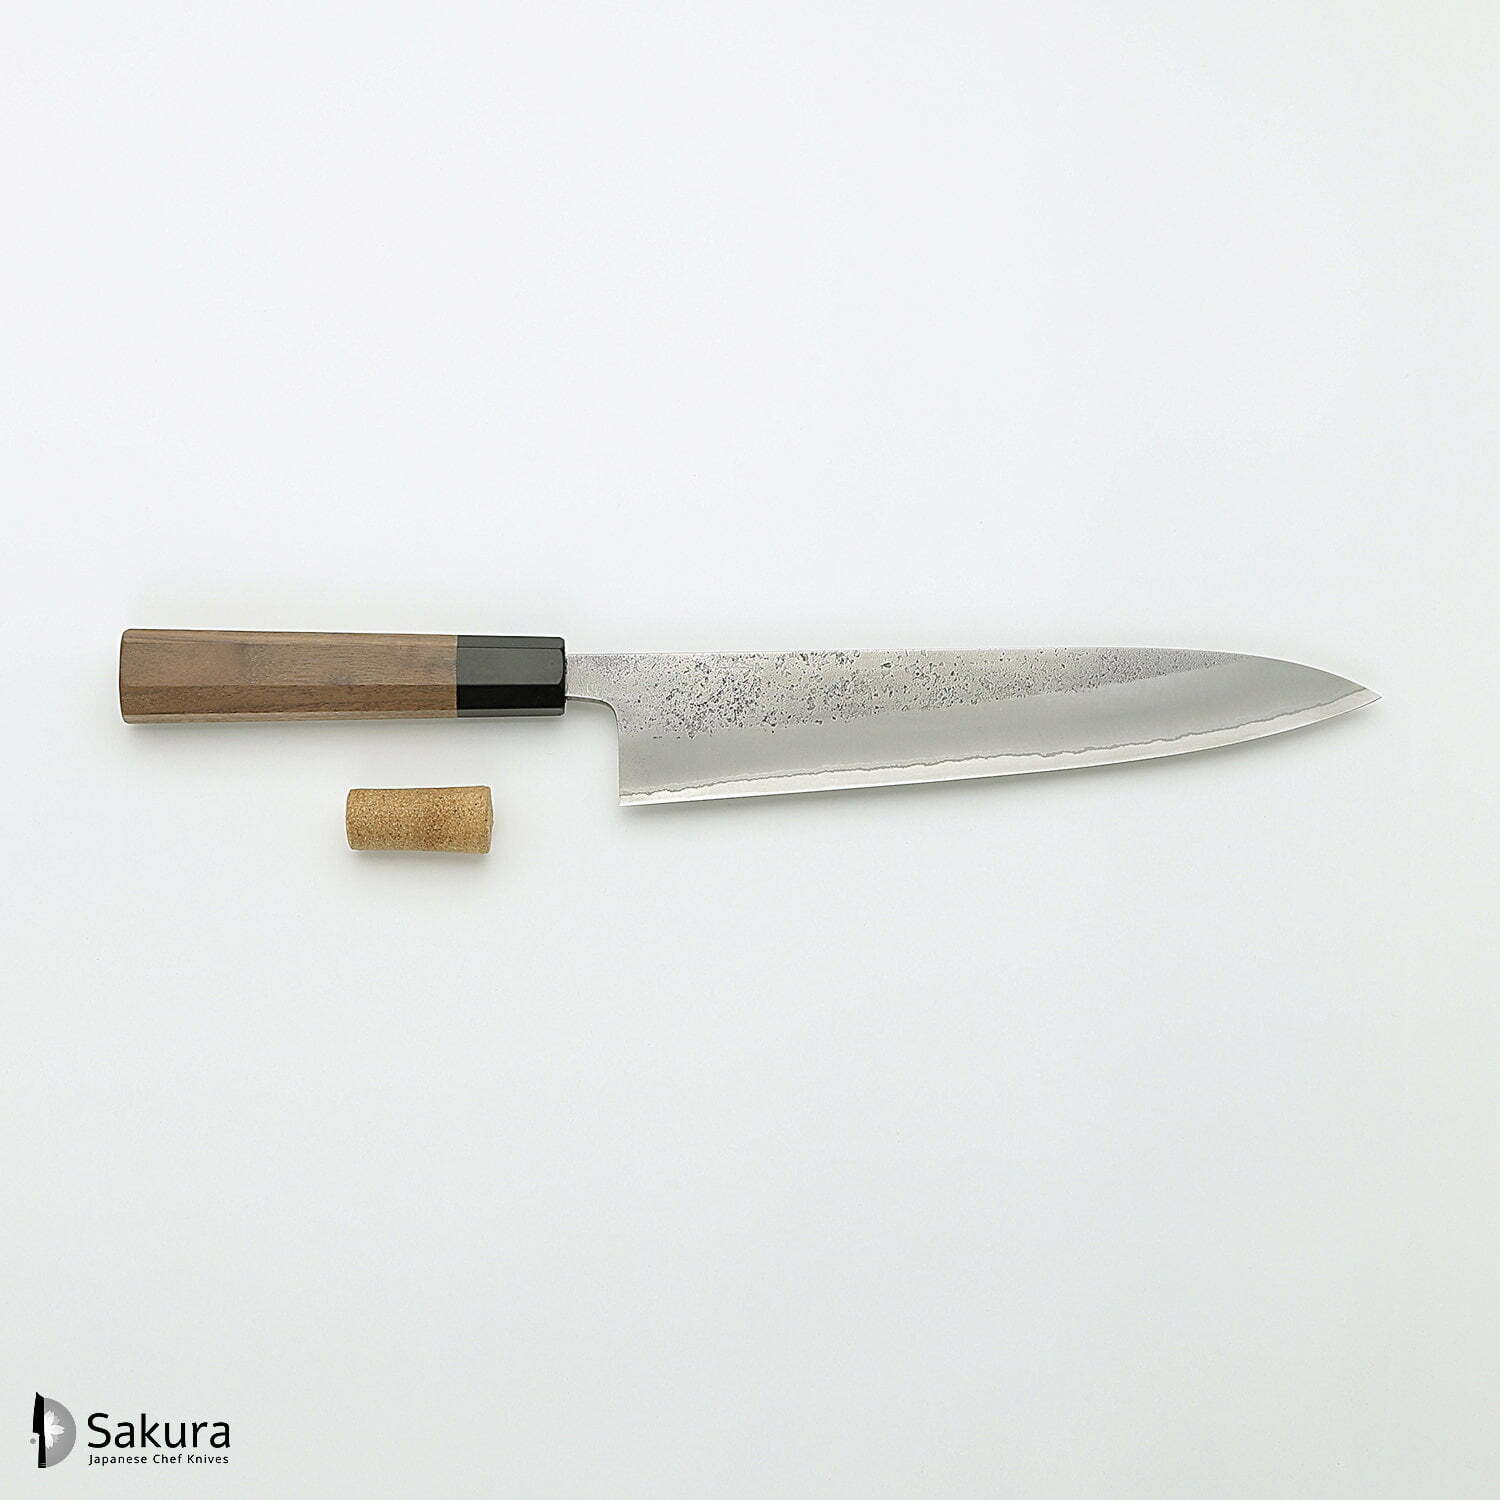 סכין שף רב-תכליתית גִּיוּטוֹ 240מ״מ מחושלת בעבודת יד 3 שכבות: פלדת פחמן יפנית מתקדמת מסוג Shirogami #2 עטופה פלדת אל-חלד גימור מט חיספוס טבעי יושיקאנה יפן